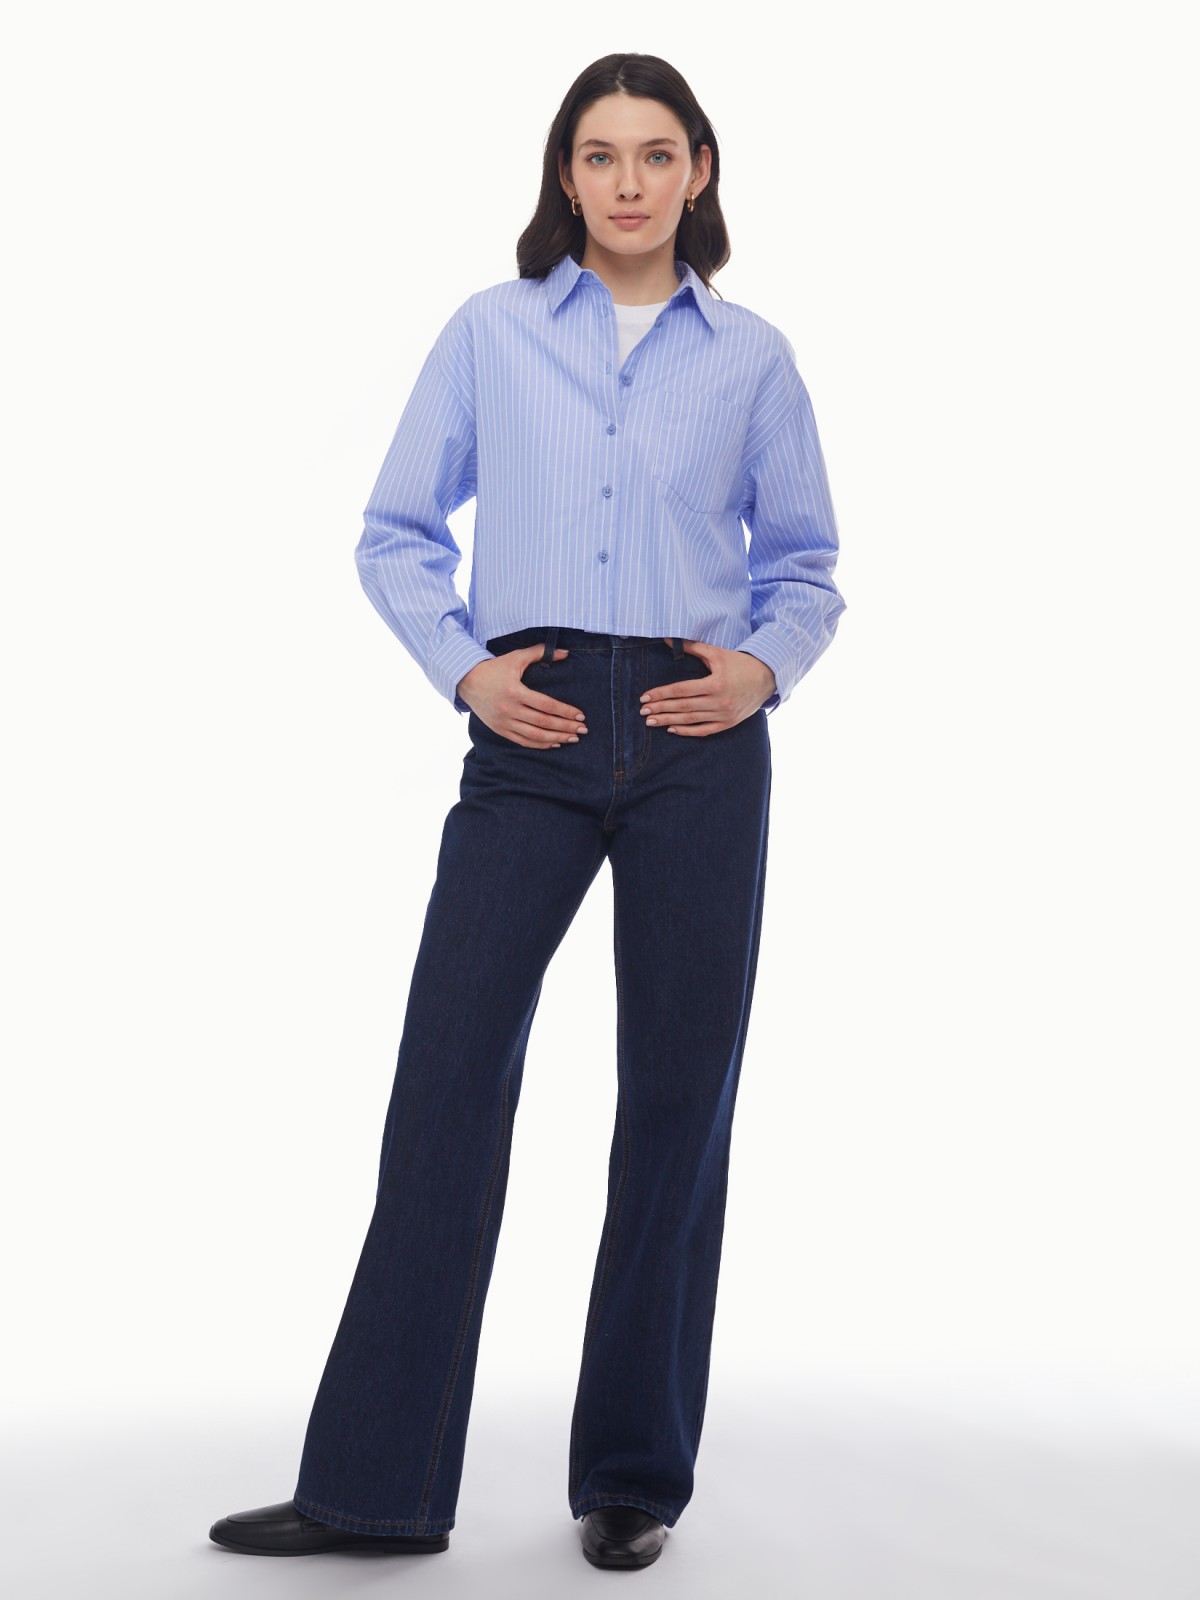 Рубашка укороченного силуэта с узором в полоску zolla 024131159163, цвет светло-голубой, размер XS - фото 2